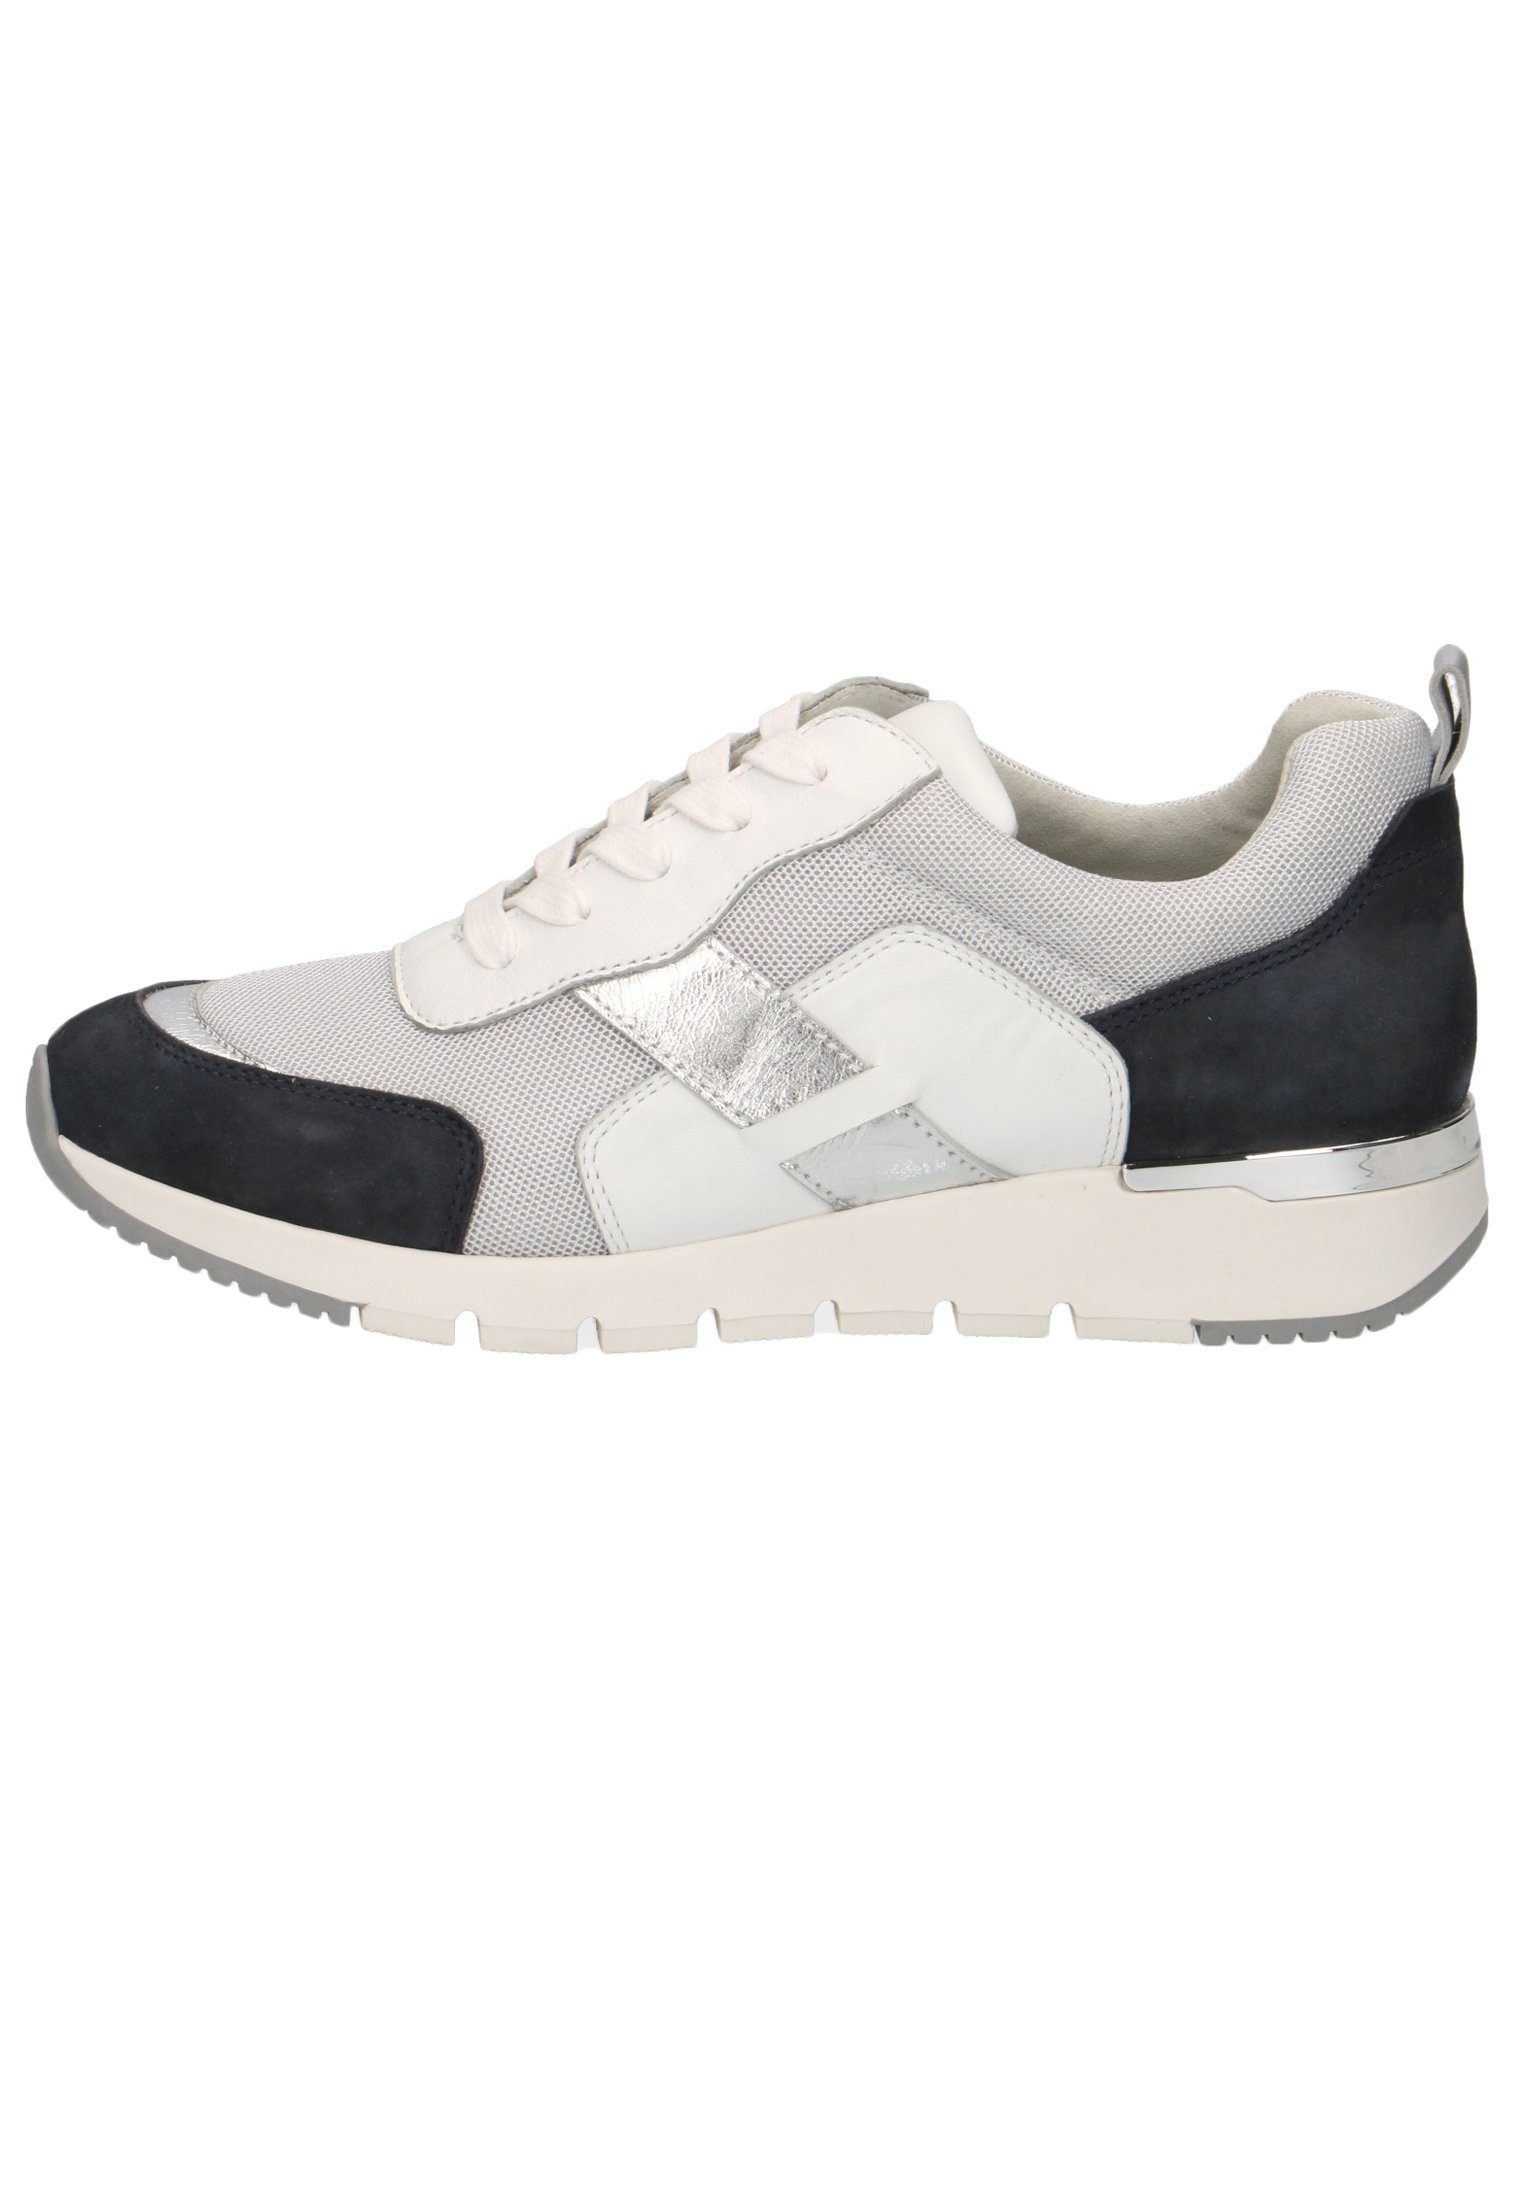 Caprice 9-9-23707-24 Sneaker Ocean 824 White